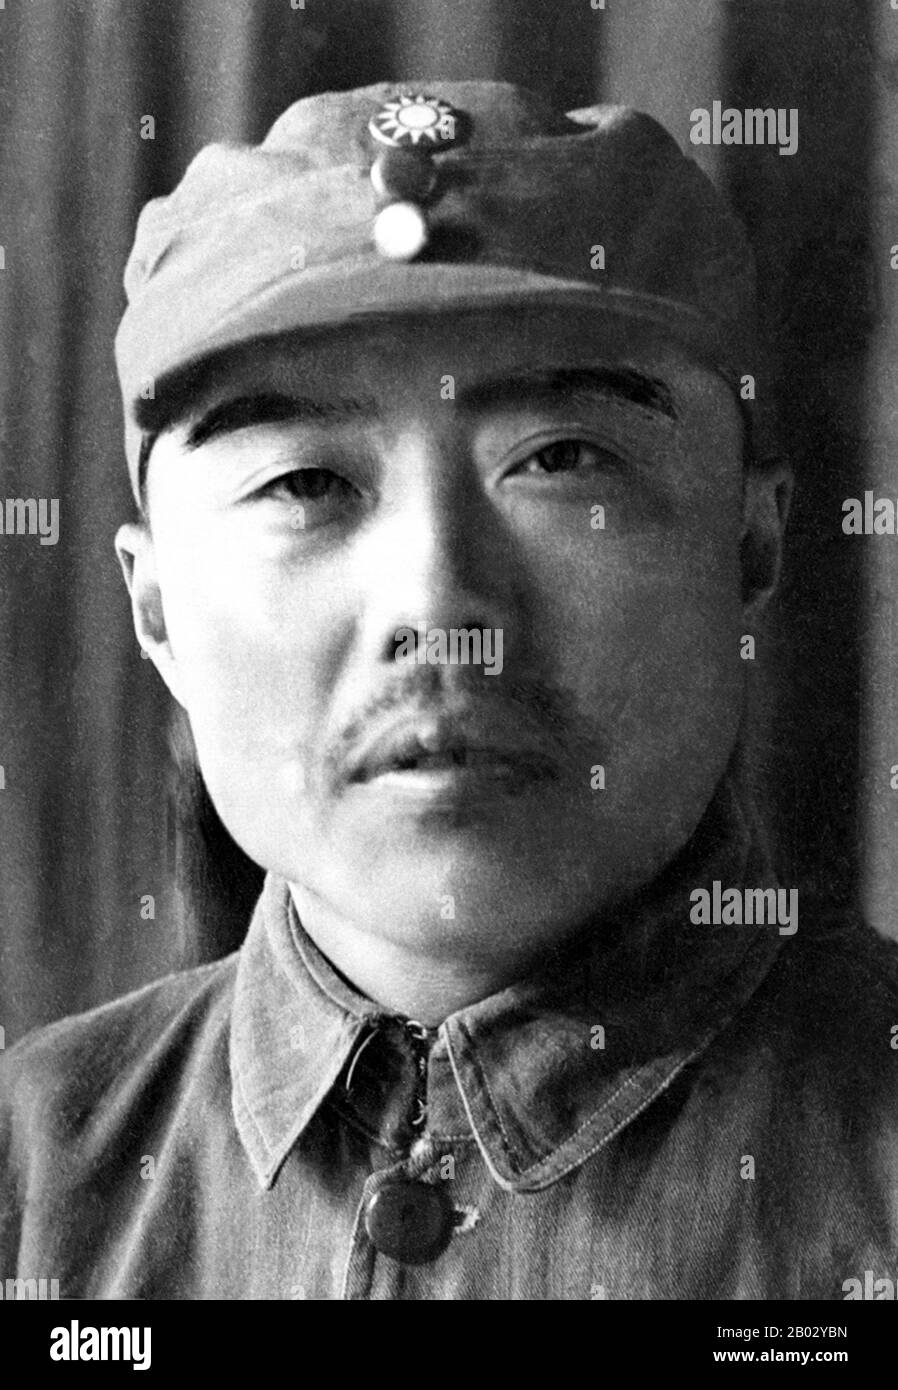 Zunächst als Arbeitsorganisator, war er während des Bürgerkrieges zwischen den Nationalisten (Guomindang oder Kuomintang) und den Kommunisten in der Kommunistischen Partei Chinas politisch-militärische Führung tätig. Er hatte während der sowjetischen Periode Jiangxi der KPCh (1931-1934) hohe Ämter inne. Im Oktober 1934, zu Beginn des Langen Marsches, blieb Xiang zurück, um eine Rückzugsaktion zu bekämpfen, die es den Marschern ermöglichen würde, aus dem Ring der umliegenden nationalistischen Streitkräfte auszusteigen. Die Marscher gingen mit Mao Zedong als ihrem Anführer nach Yan'an, während Xiang in der Jiangxi-Region blieb und die Guerilla koordinierte Stockfoto